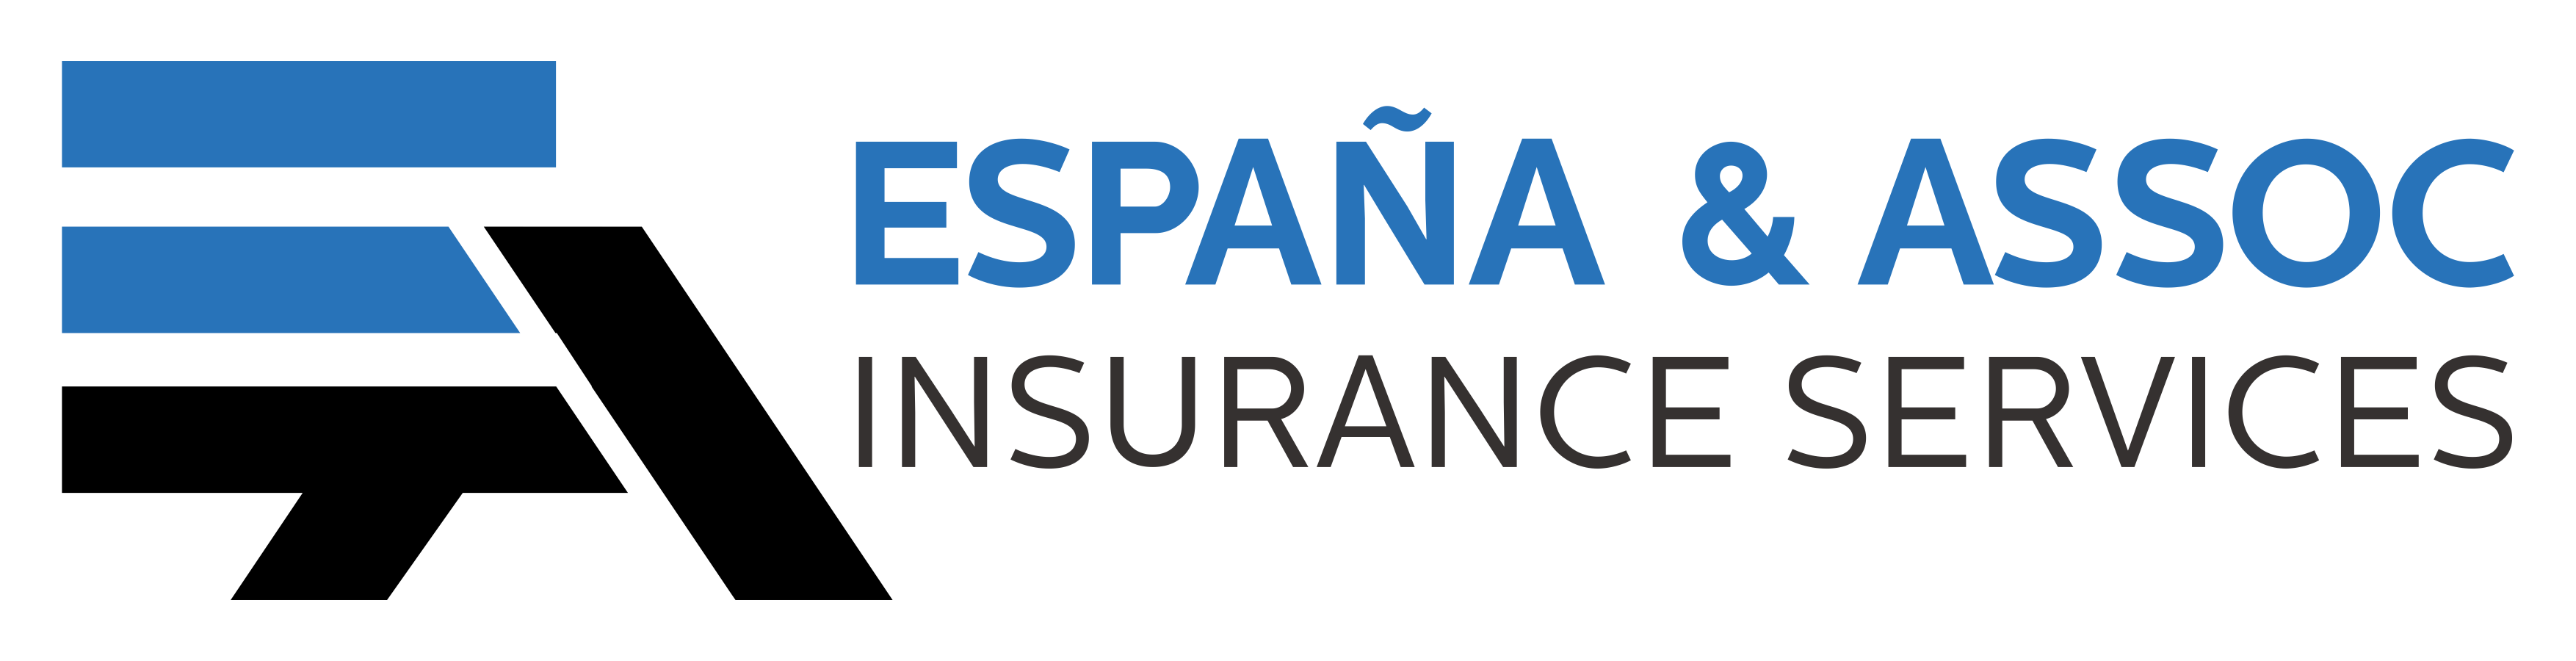 España & Associates Insurance Services